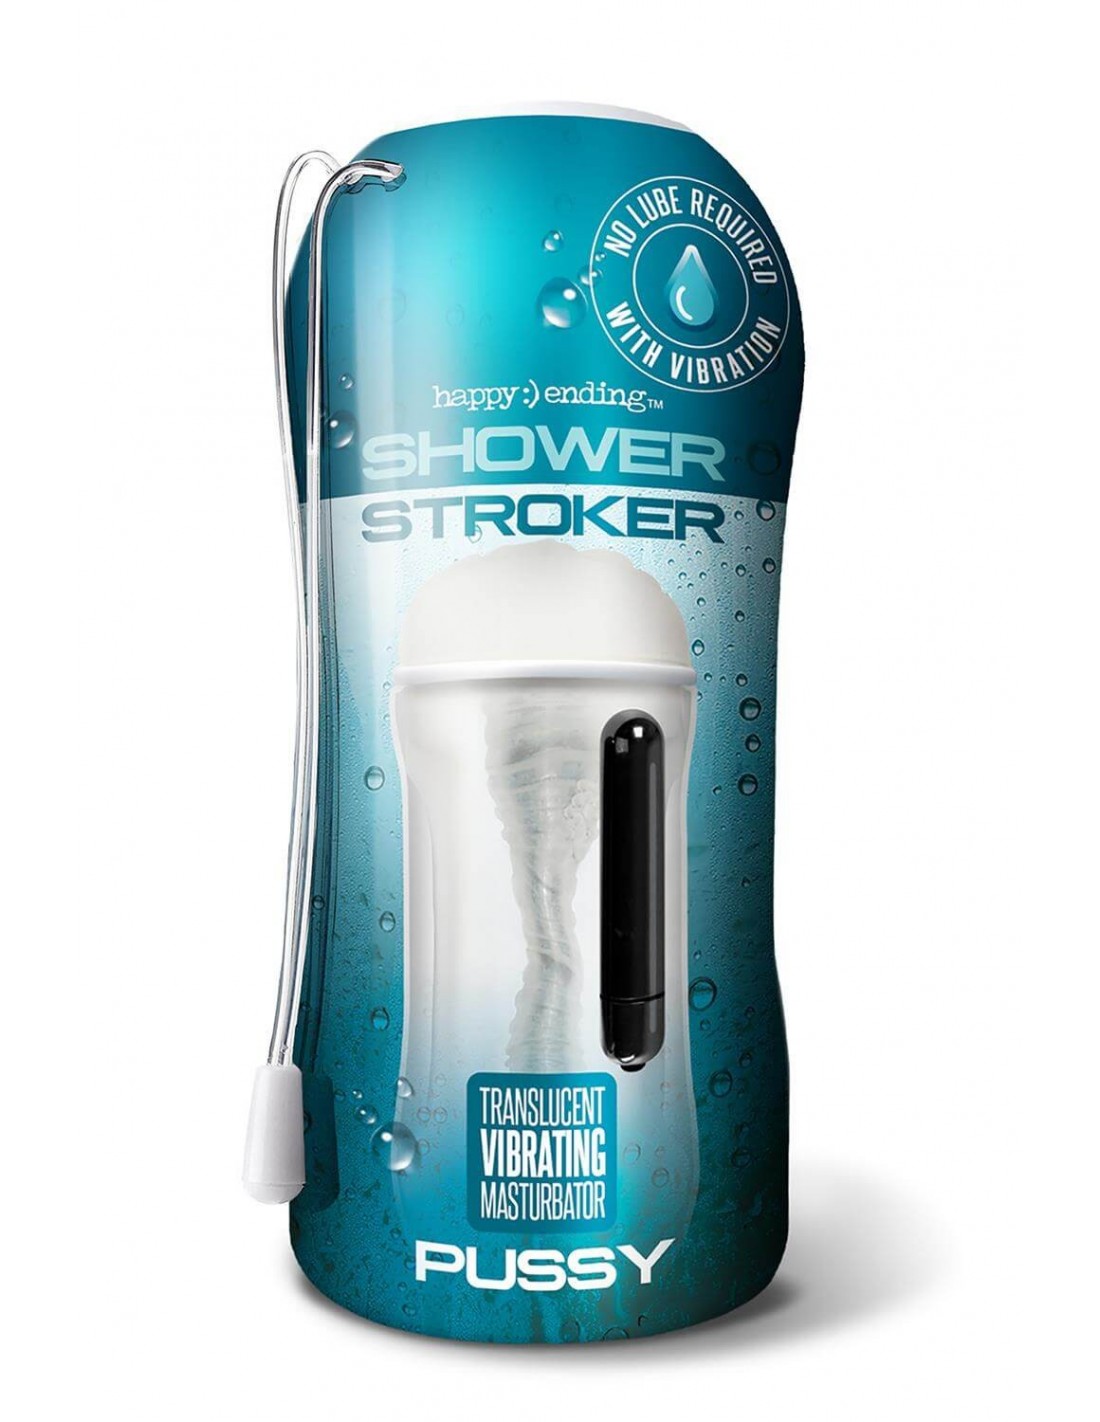 Shower Stroker